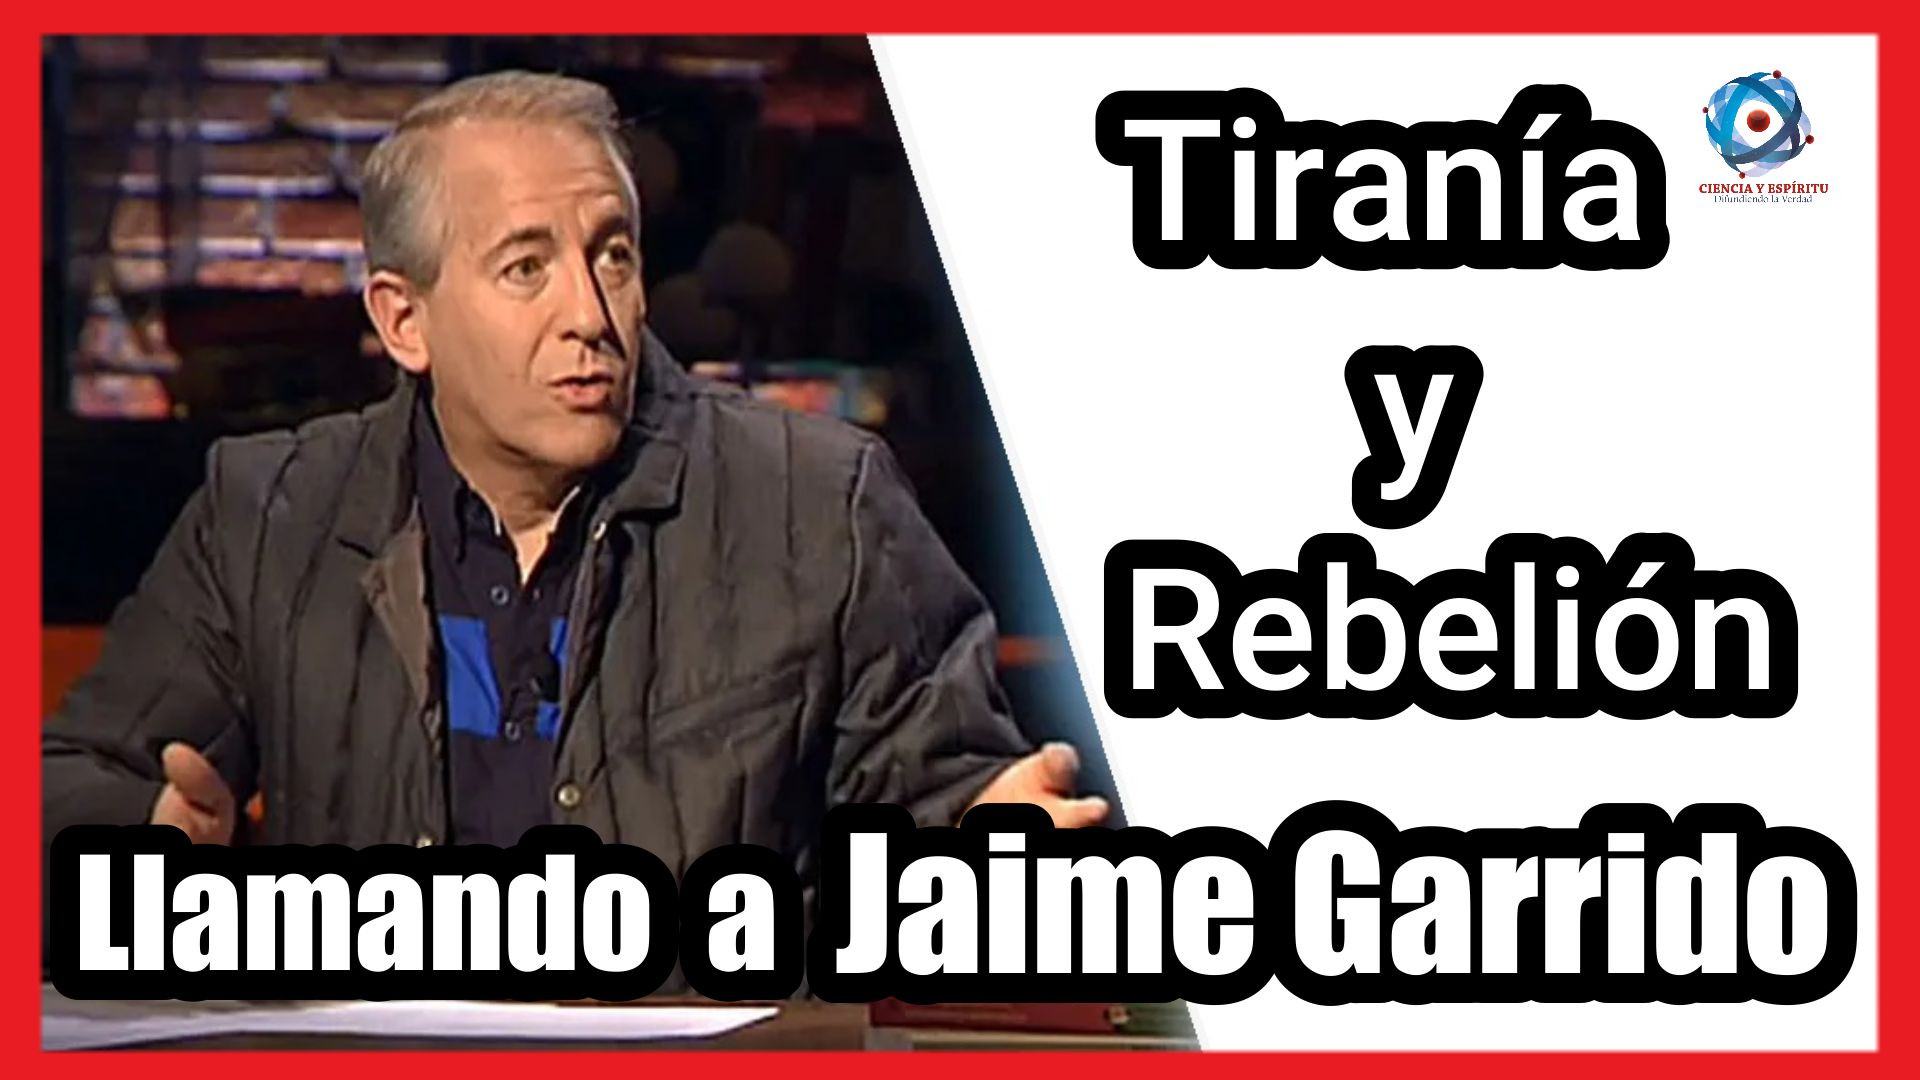 Llamando a Jaime Garrido "Tirania y Rebelión"